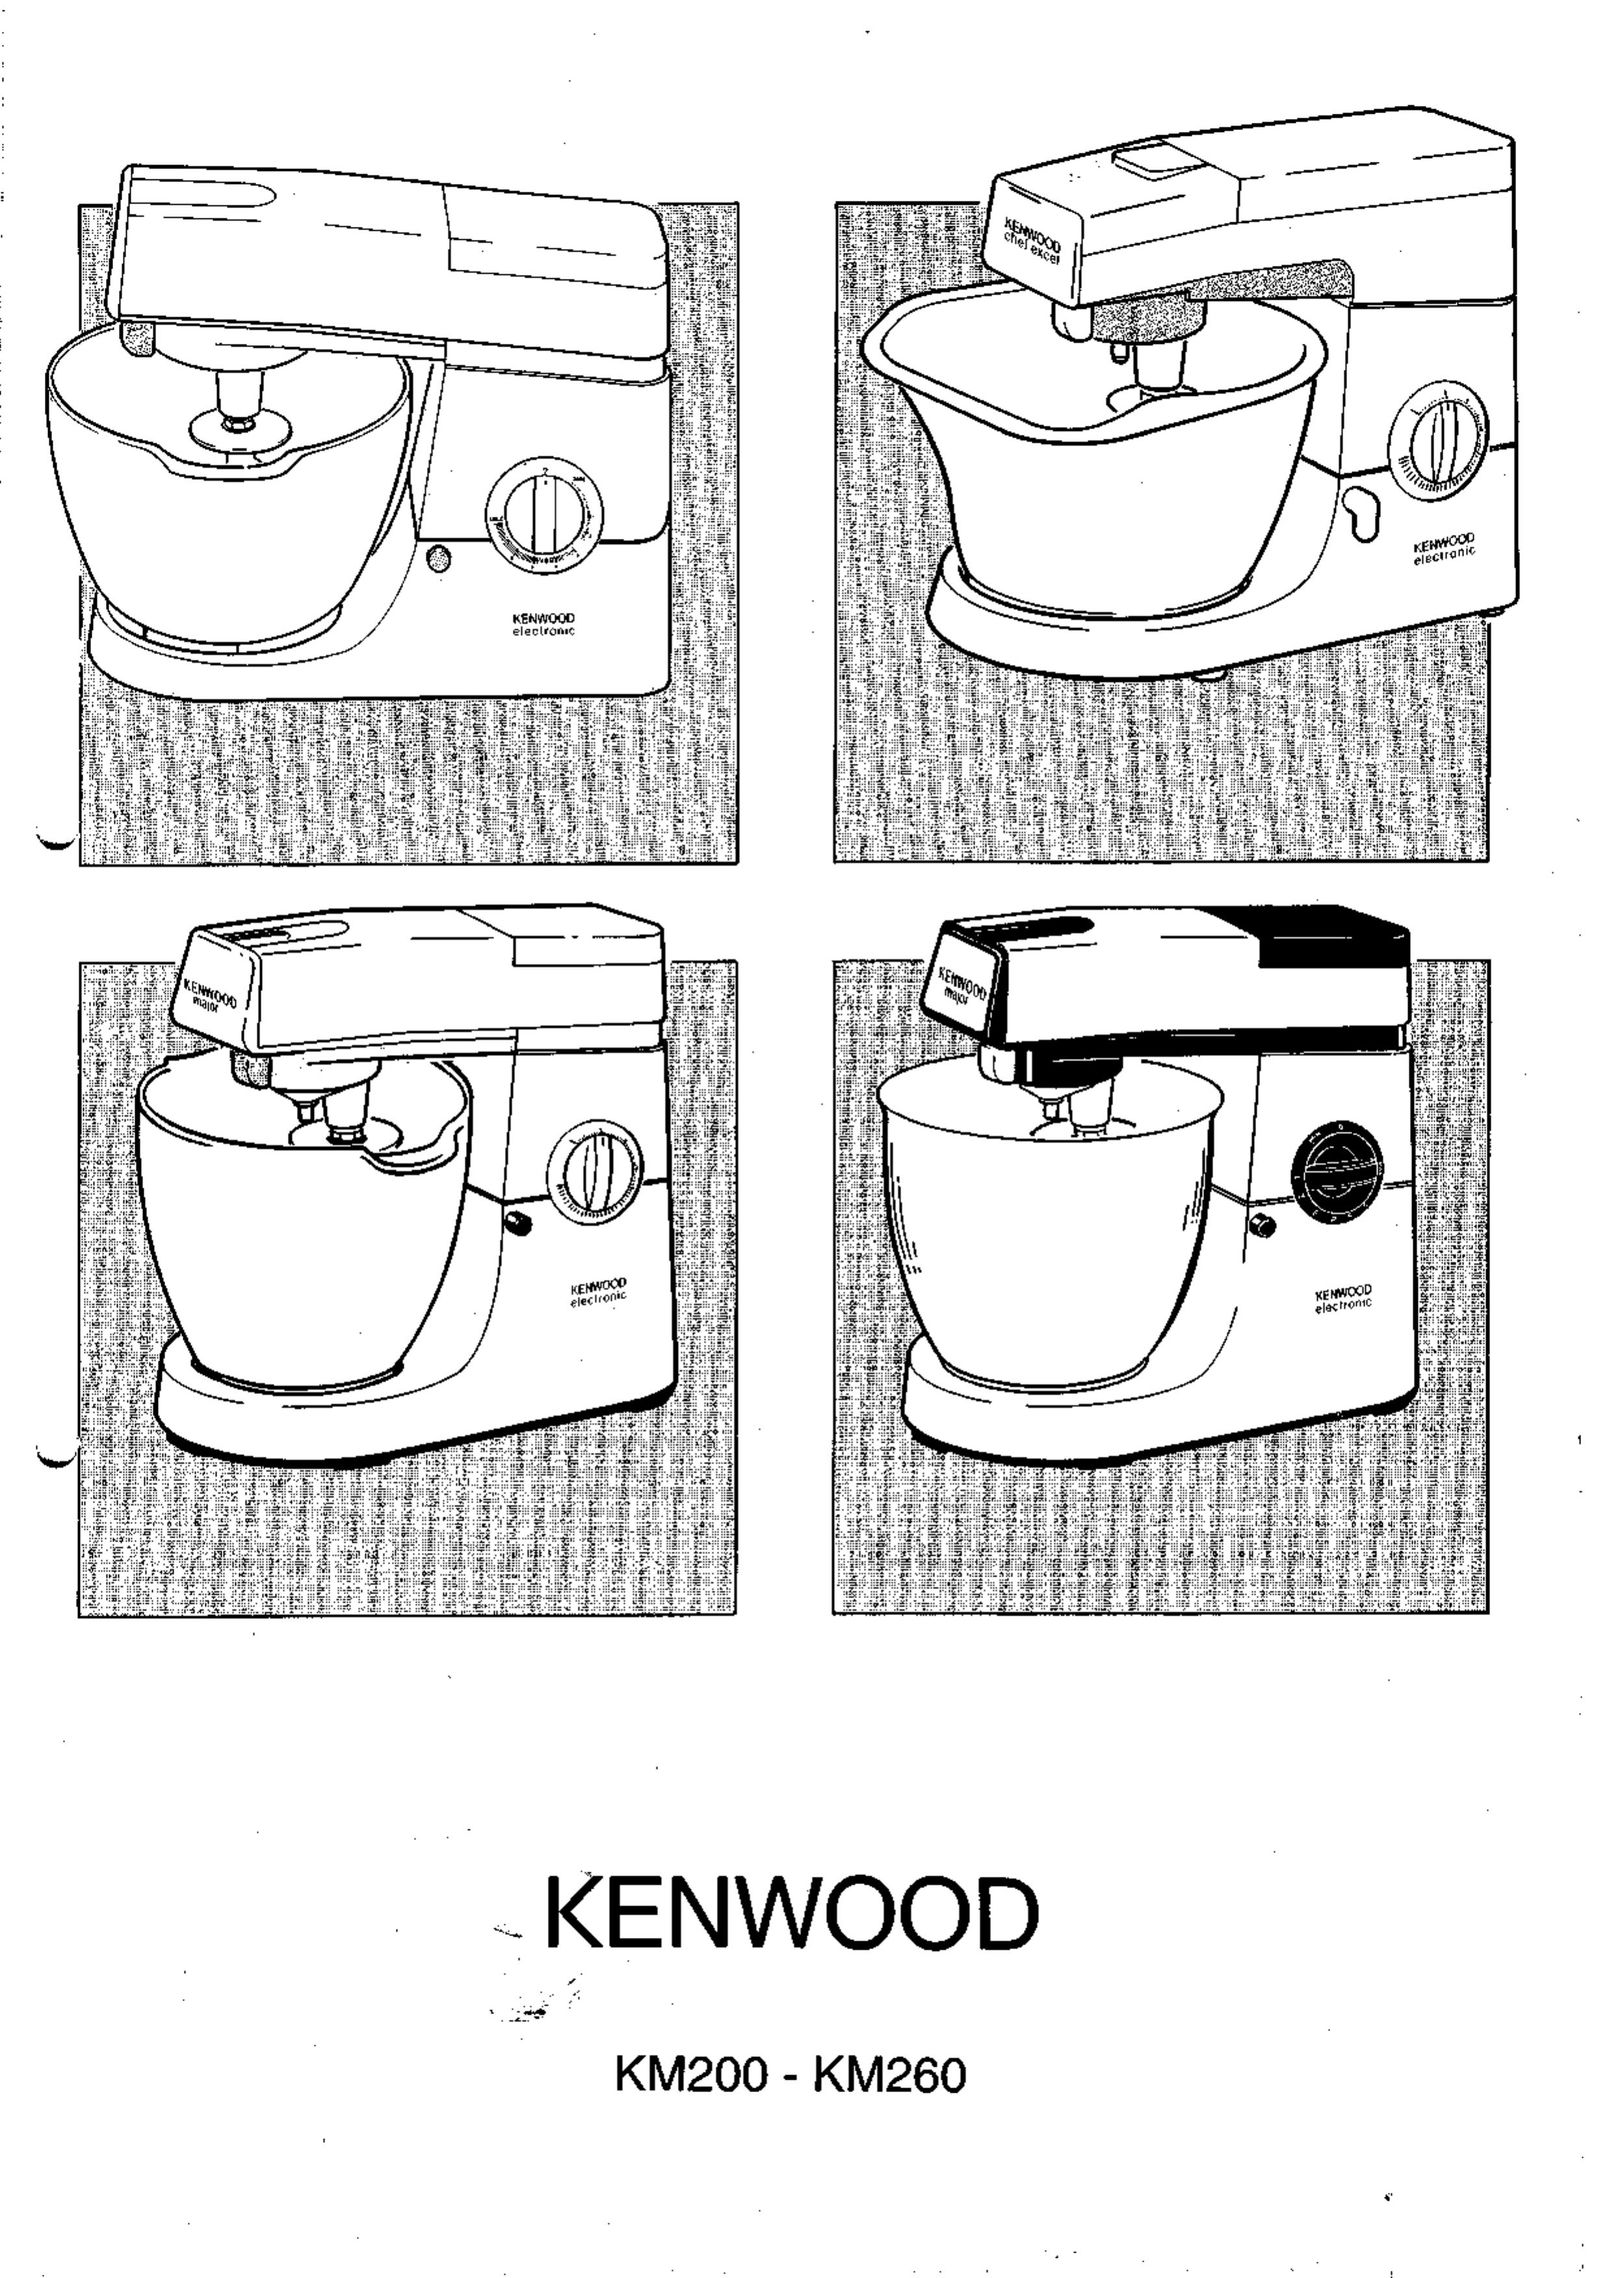 Kenwood KM200 Mixer User Manual